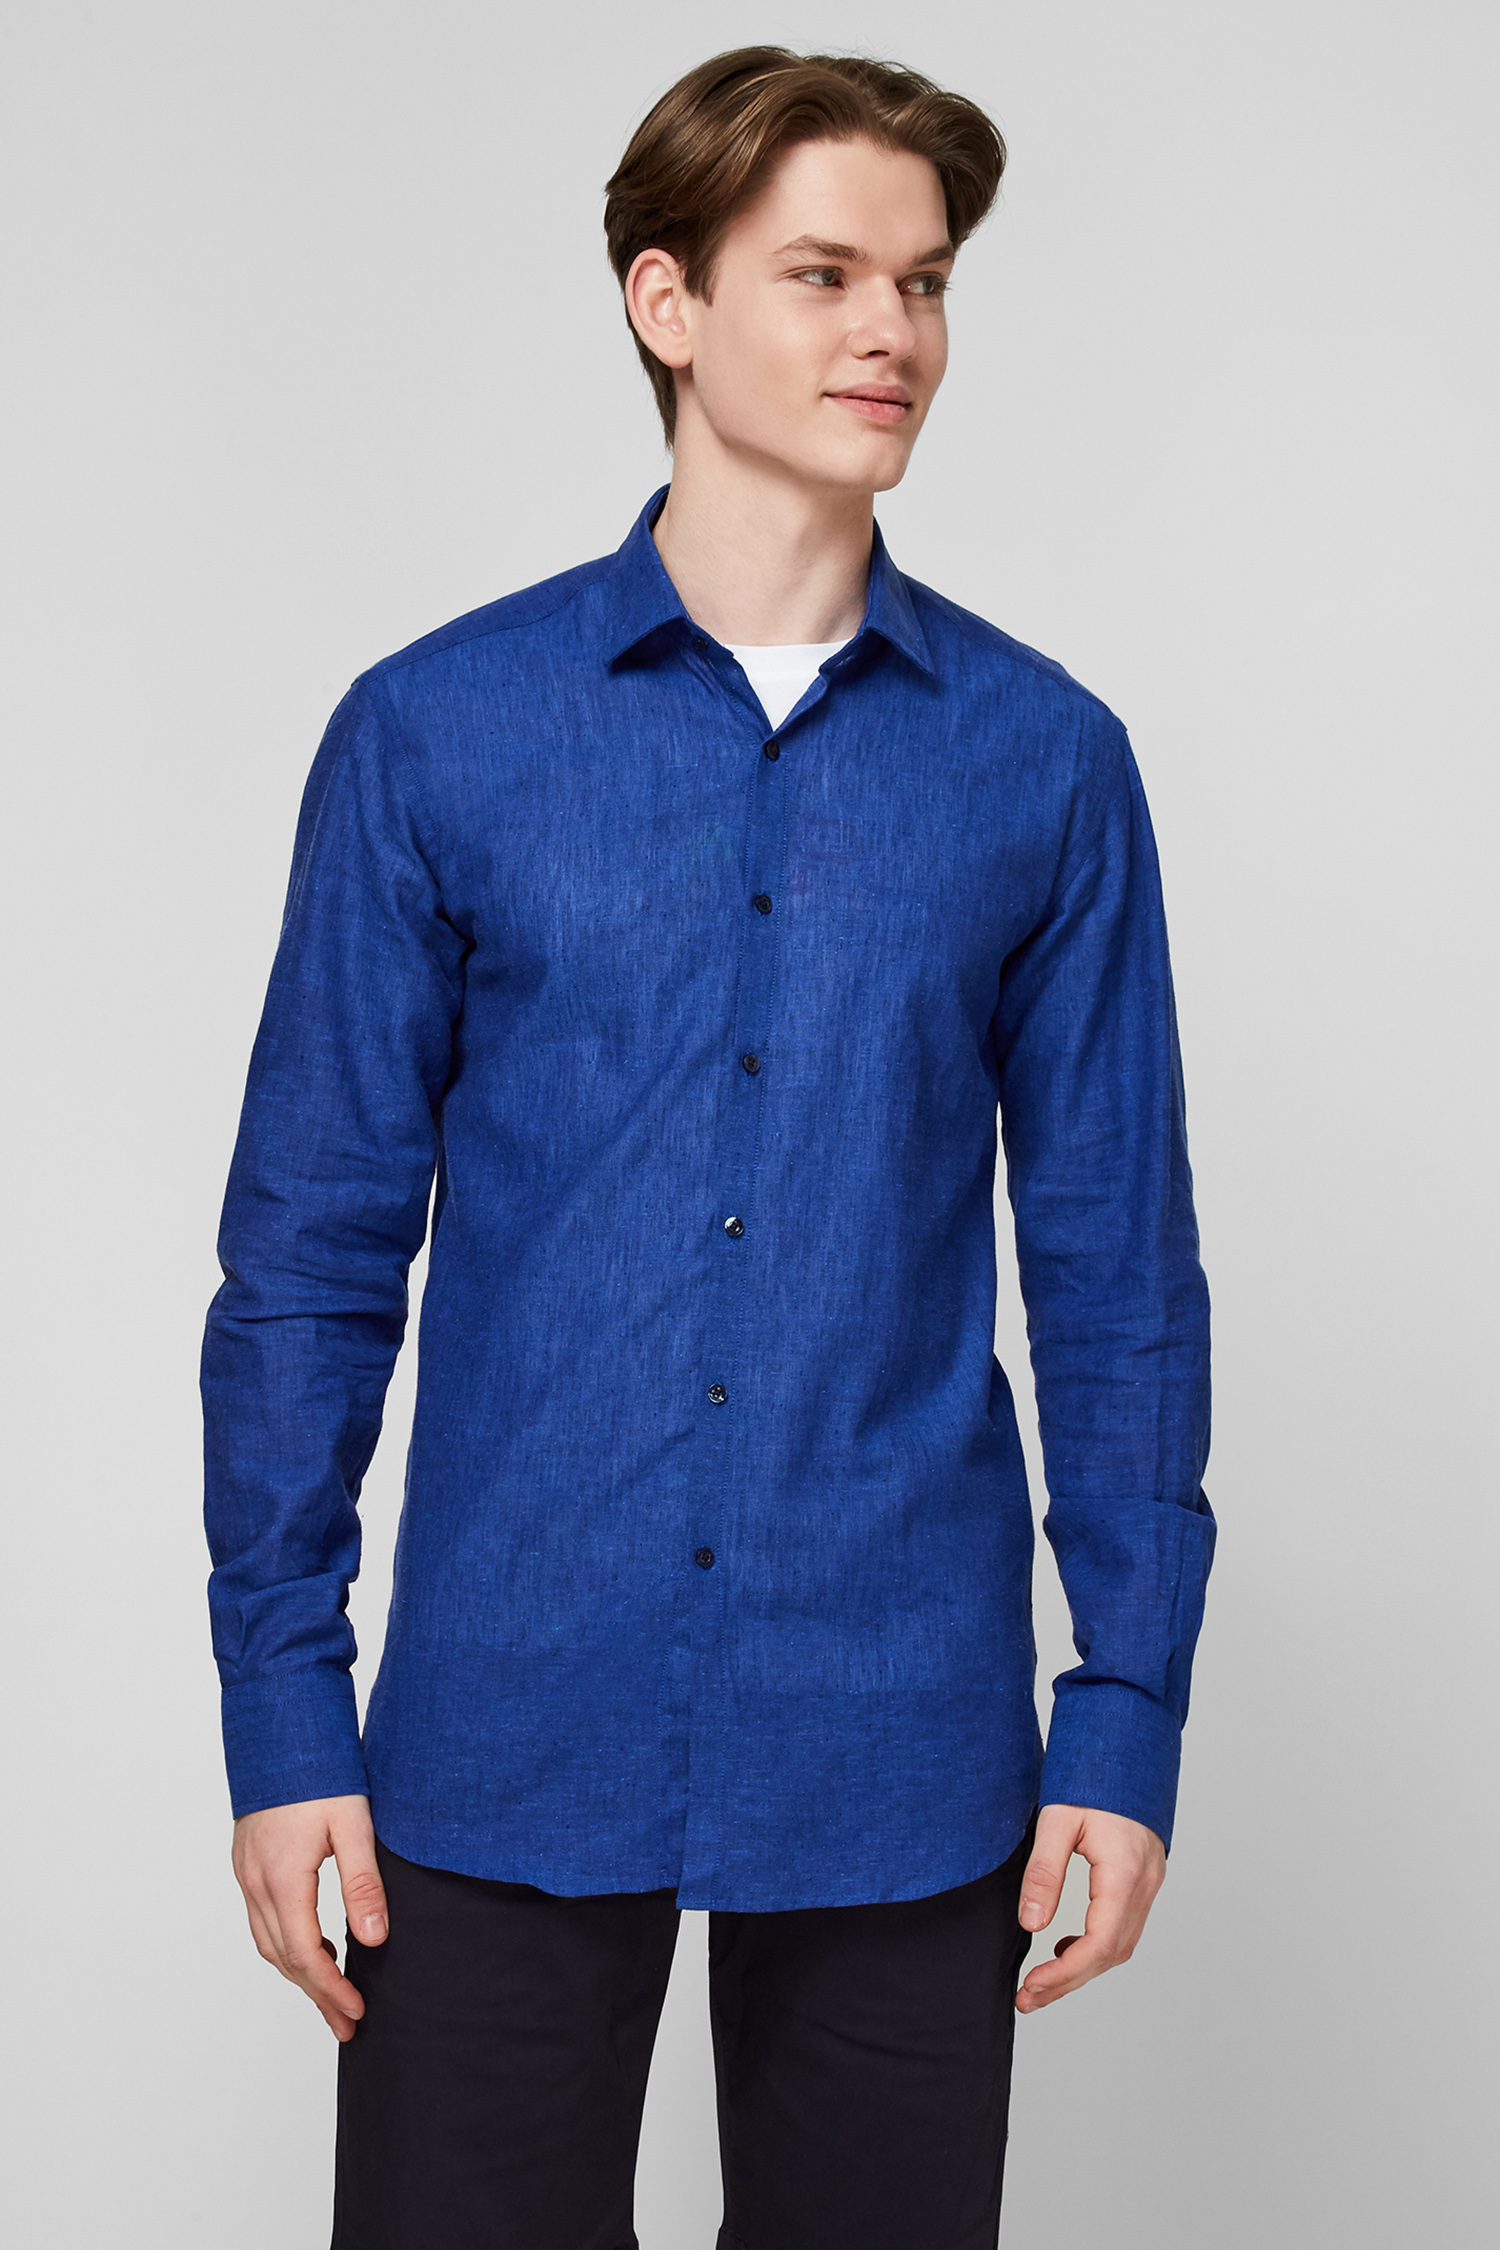 Синяя льняная рубашка для парней Karl Lagerfeld 511628.605003;660